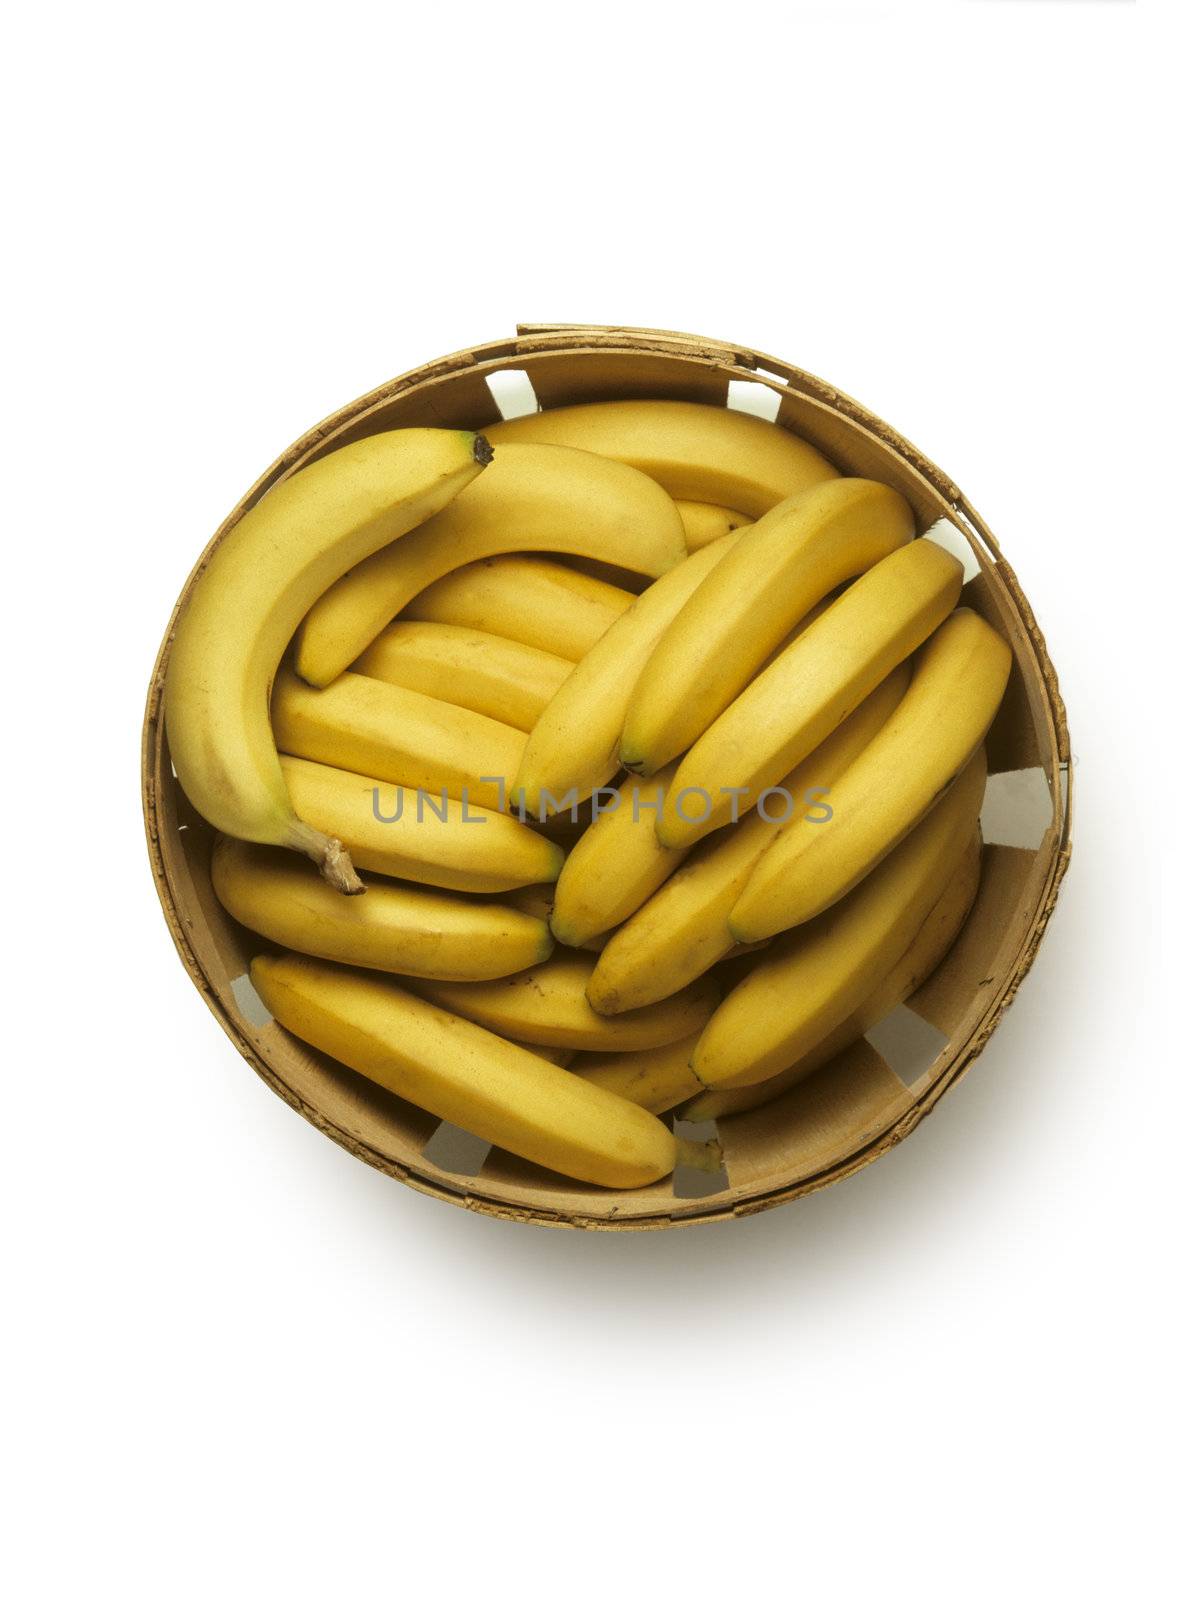 Overhead view of bushel basket of yellow bananas